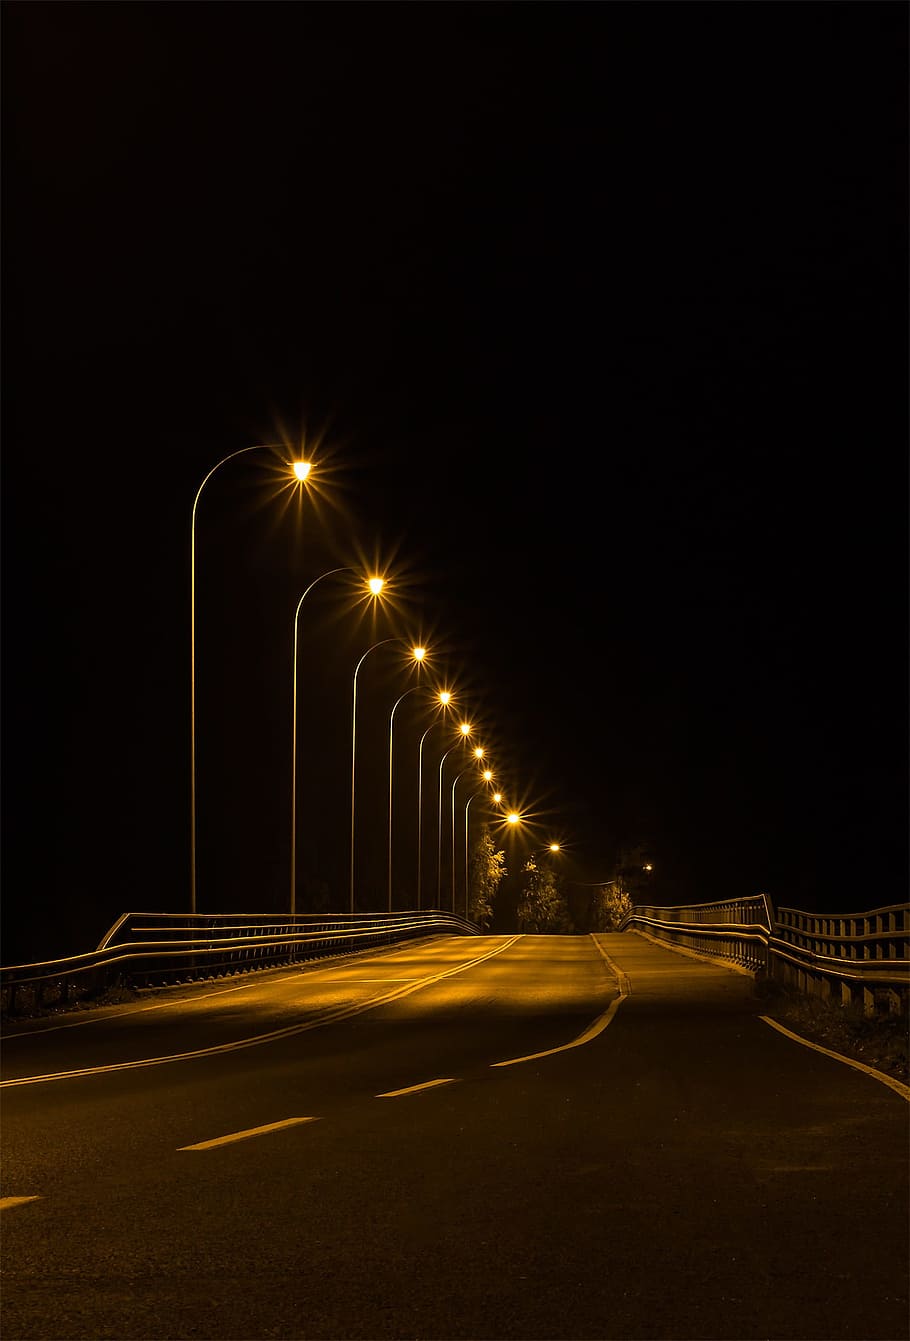 kosong, jalan raya, menyala, tiang lampu, waktu malam, jembatan aliran alder, malam, di malam hari, keheningan, penerangan